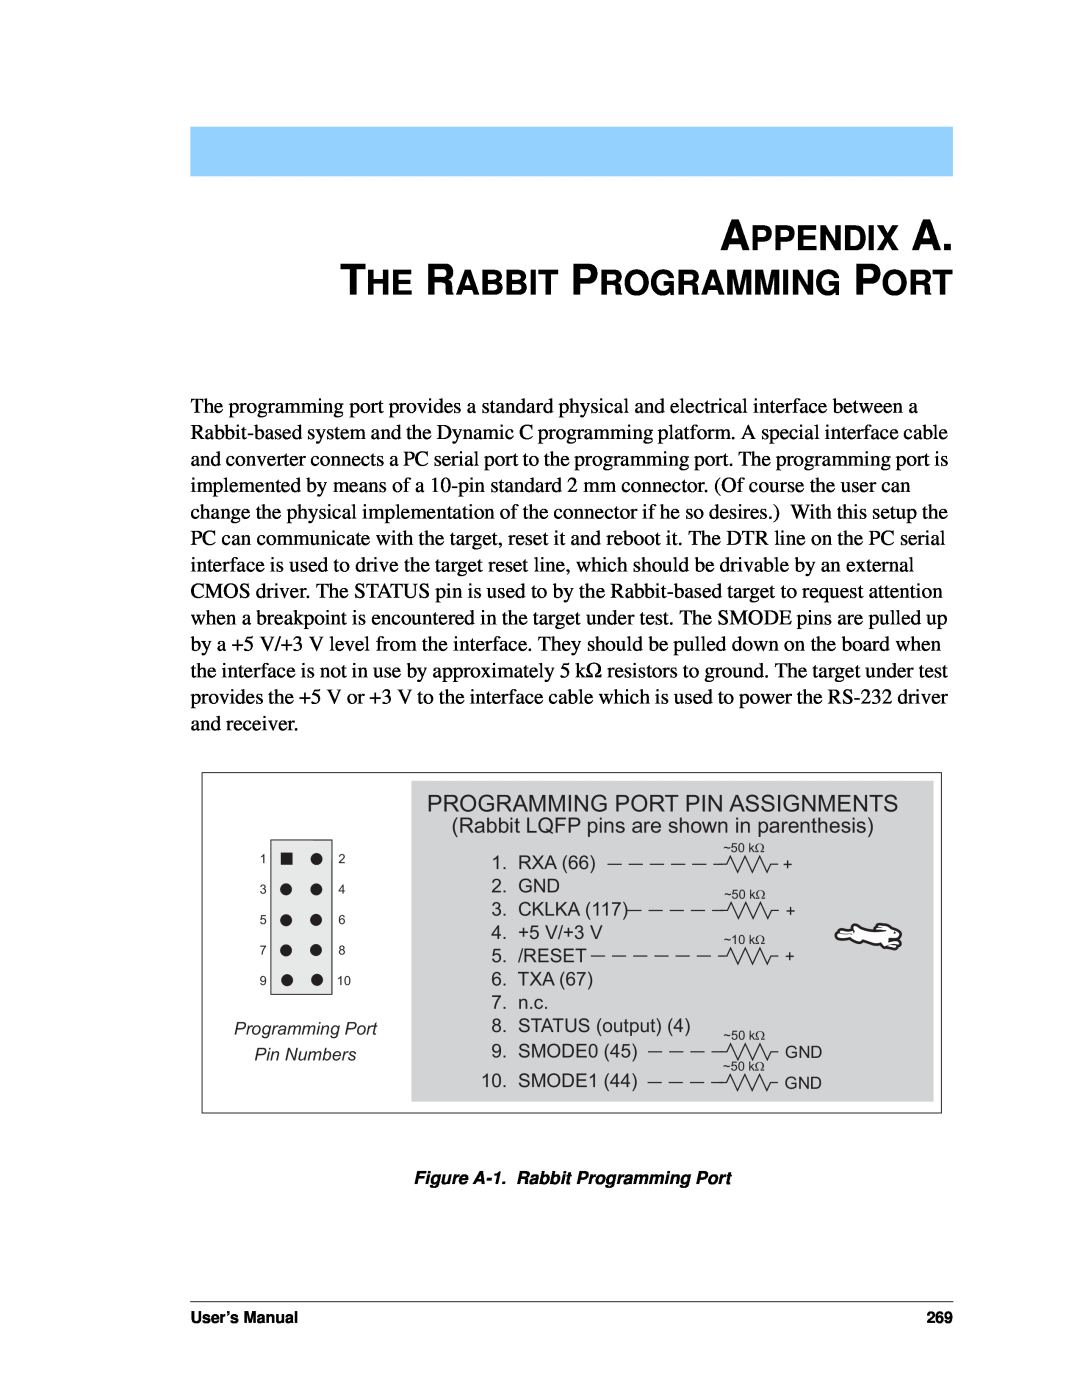 Jameco Electronics 3000, 2000 manual Appendix A. The Rabbit Programming Port, Programming Port Pin Assignments 